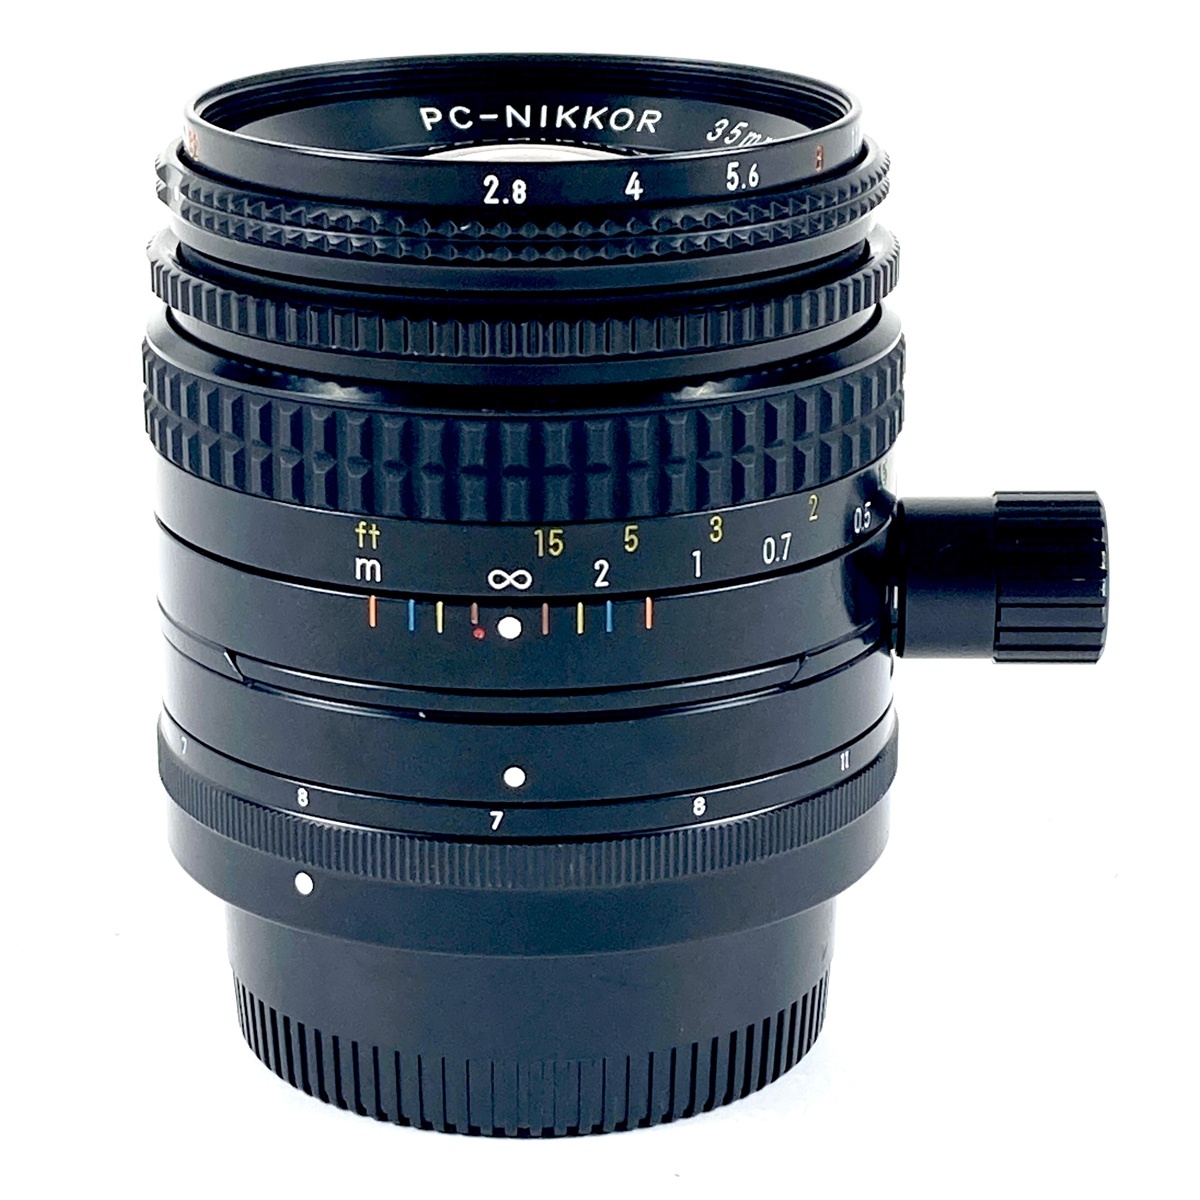 ニコン Nikon PC-NIKKOR 35mm F2.8 一眼カメラ用レンズ（マニュアルフォーカス） 【中古】の画像1